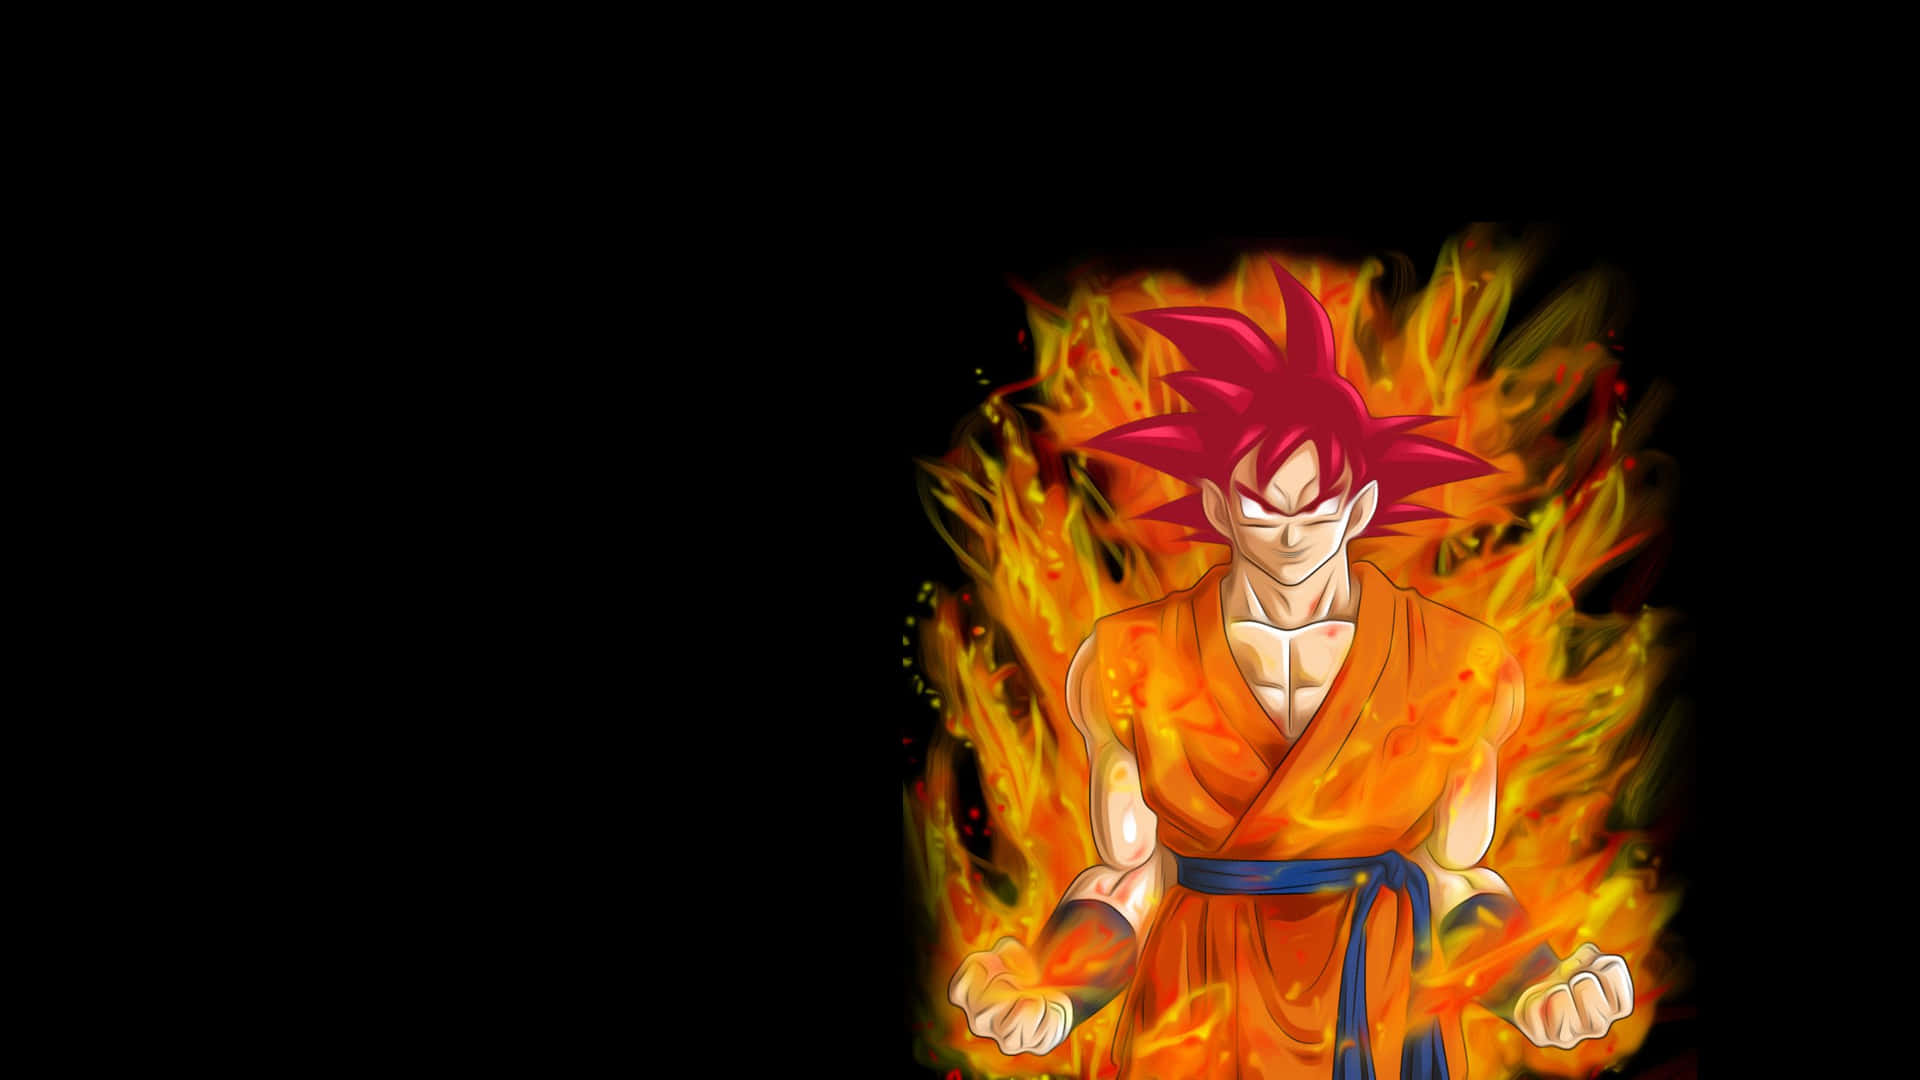 Imagemdo Goku Super Saiyan God Level Para Papel De Parede De Computador Ou Celular.